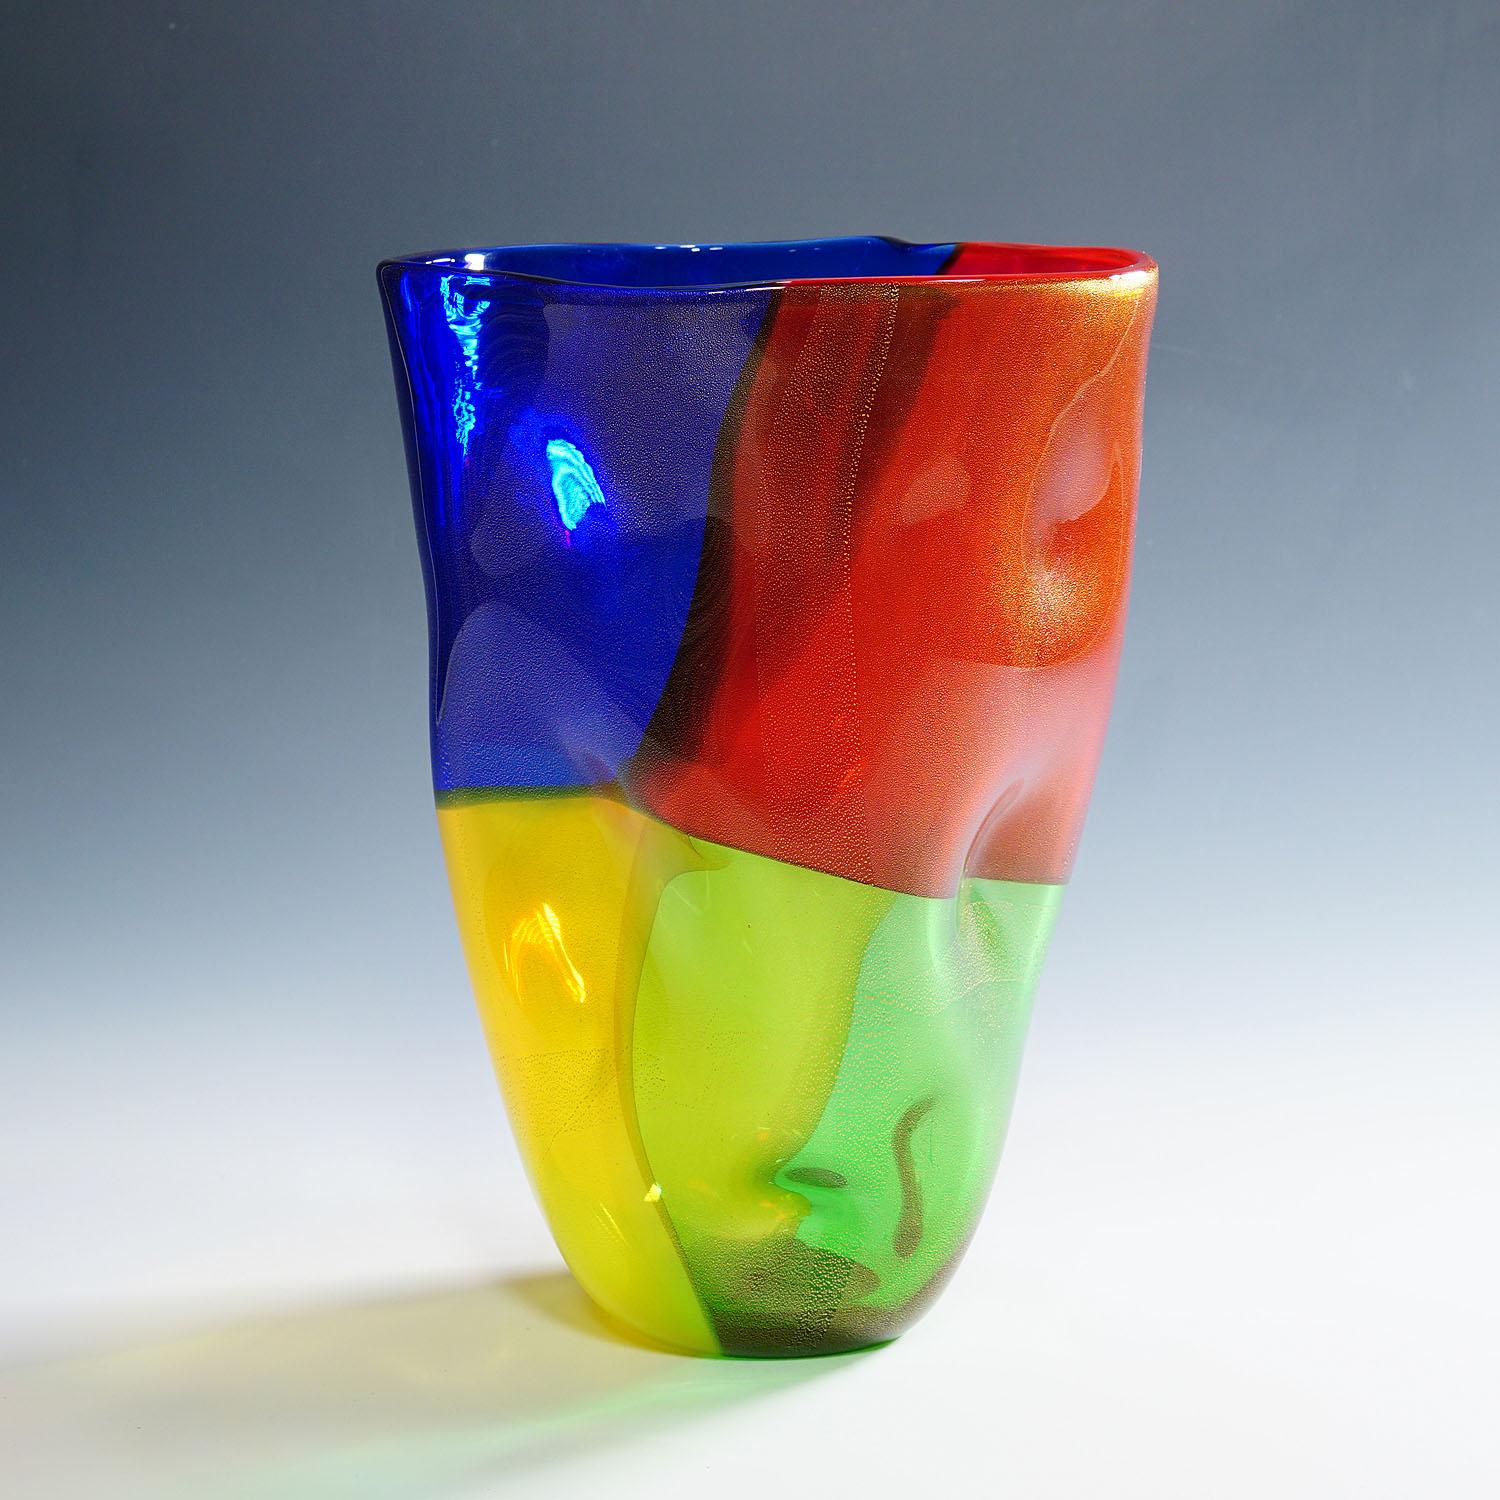 Vaso d'epoca in vetro artistico della serie 4 Quarti di Seguso Viro

Un grande vaso in vetro artistico a forma di sacchetto di carta (cartoccio). Il vaso fa parte della serie 